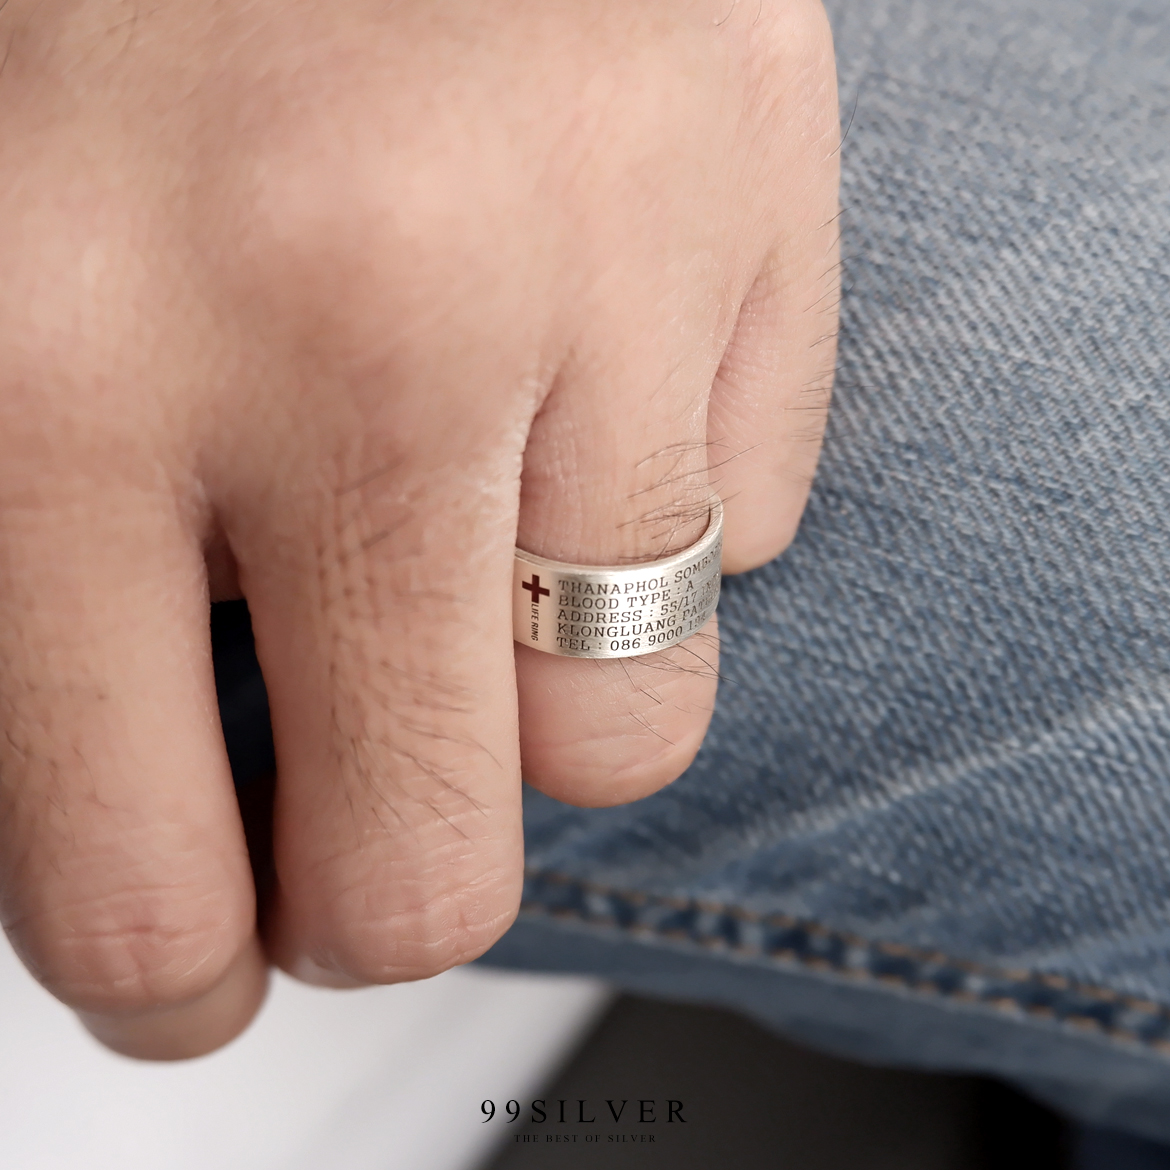 Life Ring แหวนช่วยชีวิตยามฉุกเฉิน มีข้อมูลสำคัญที่สามารถช่วยชีวิตคุณได้